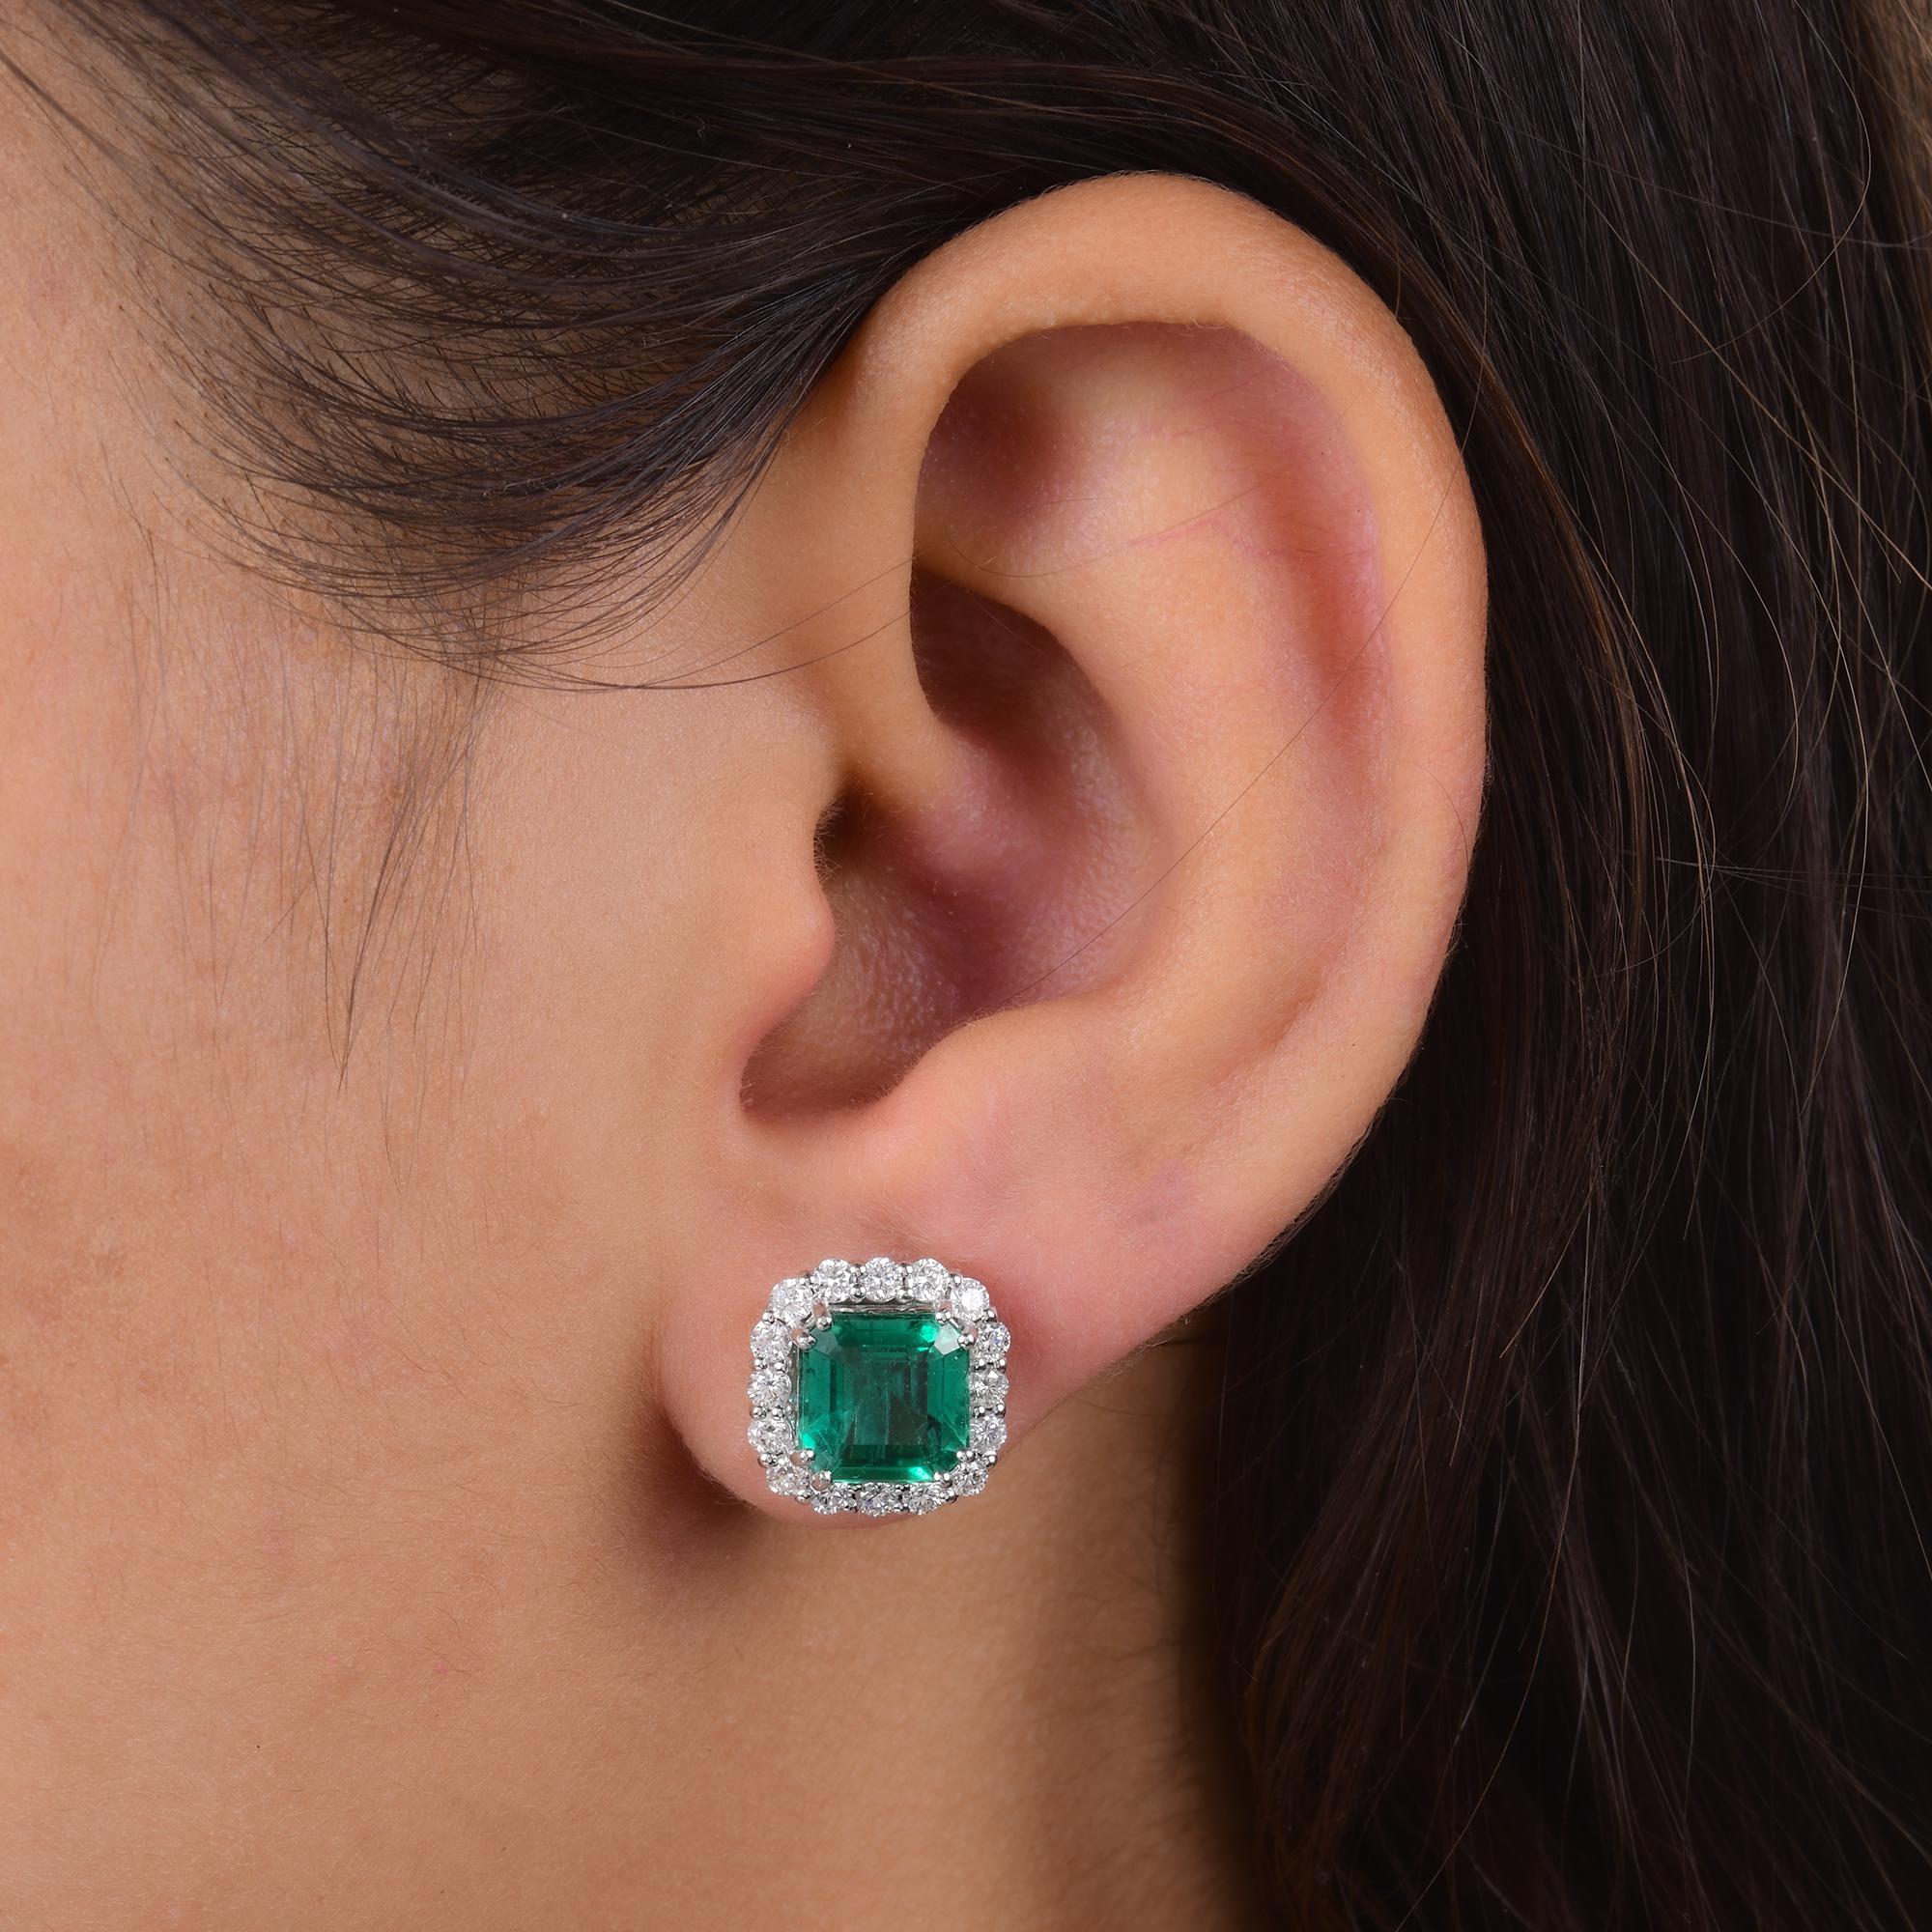 Emerald Cut Zambian Emerald Gemstone Stud Earrings Diamond 14 Karat White Gold Fine Jewelry For Sale